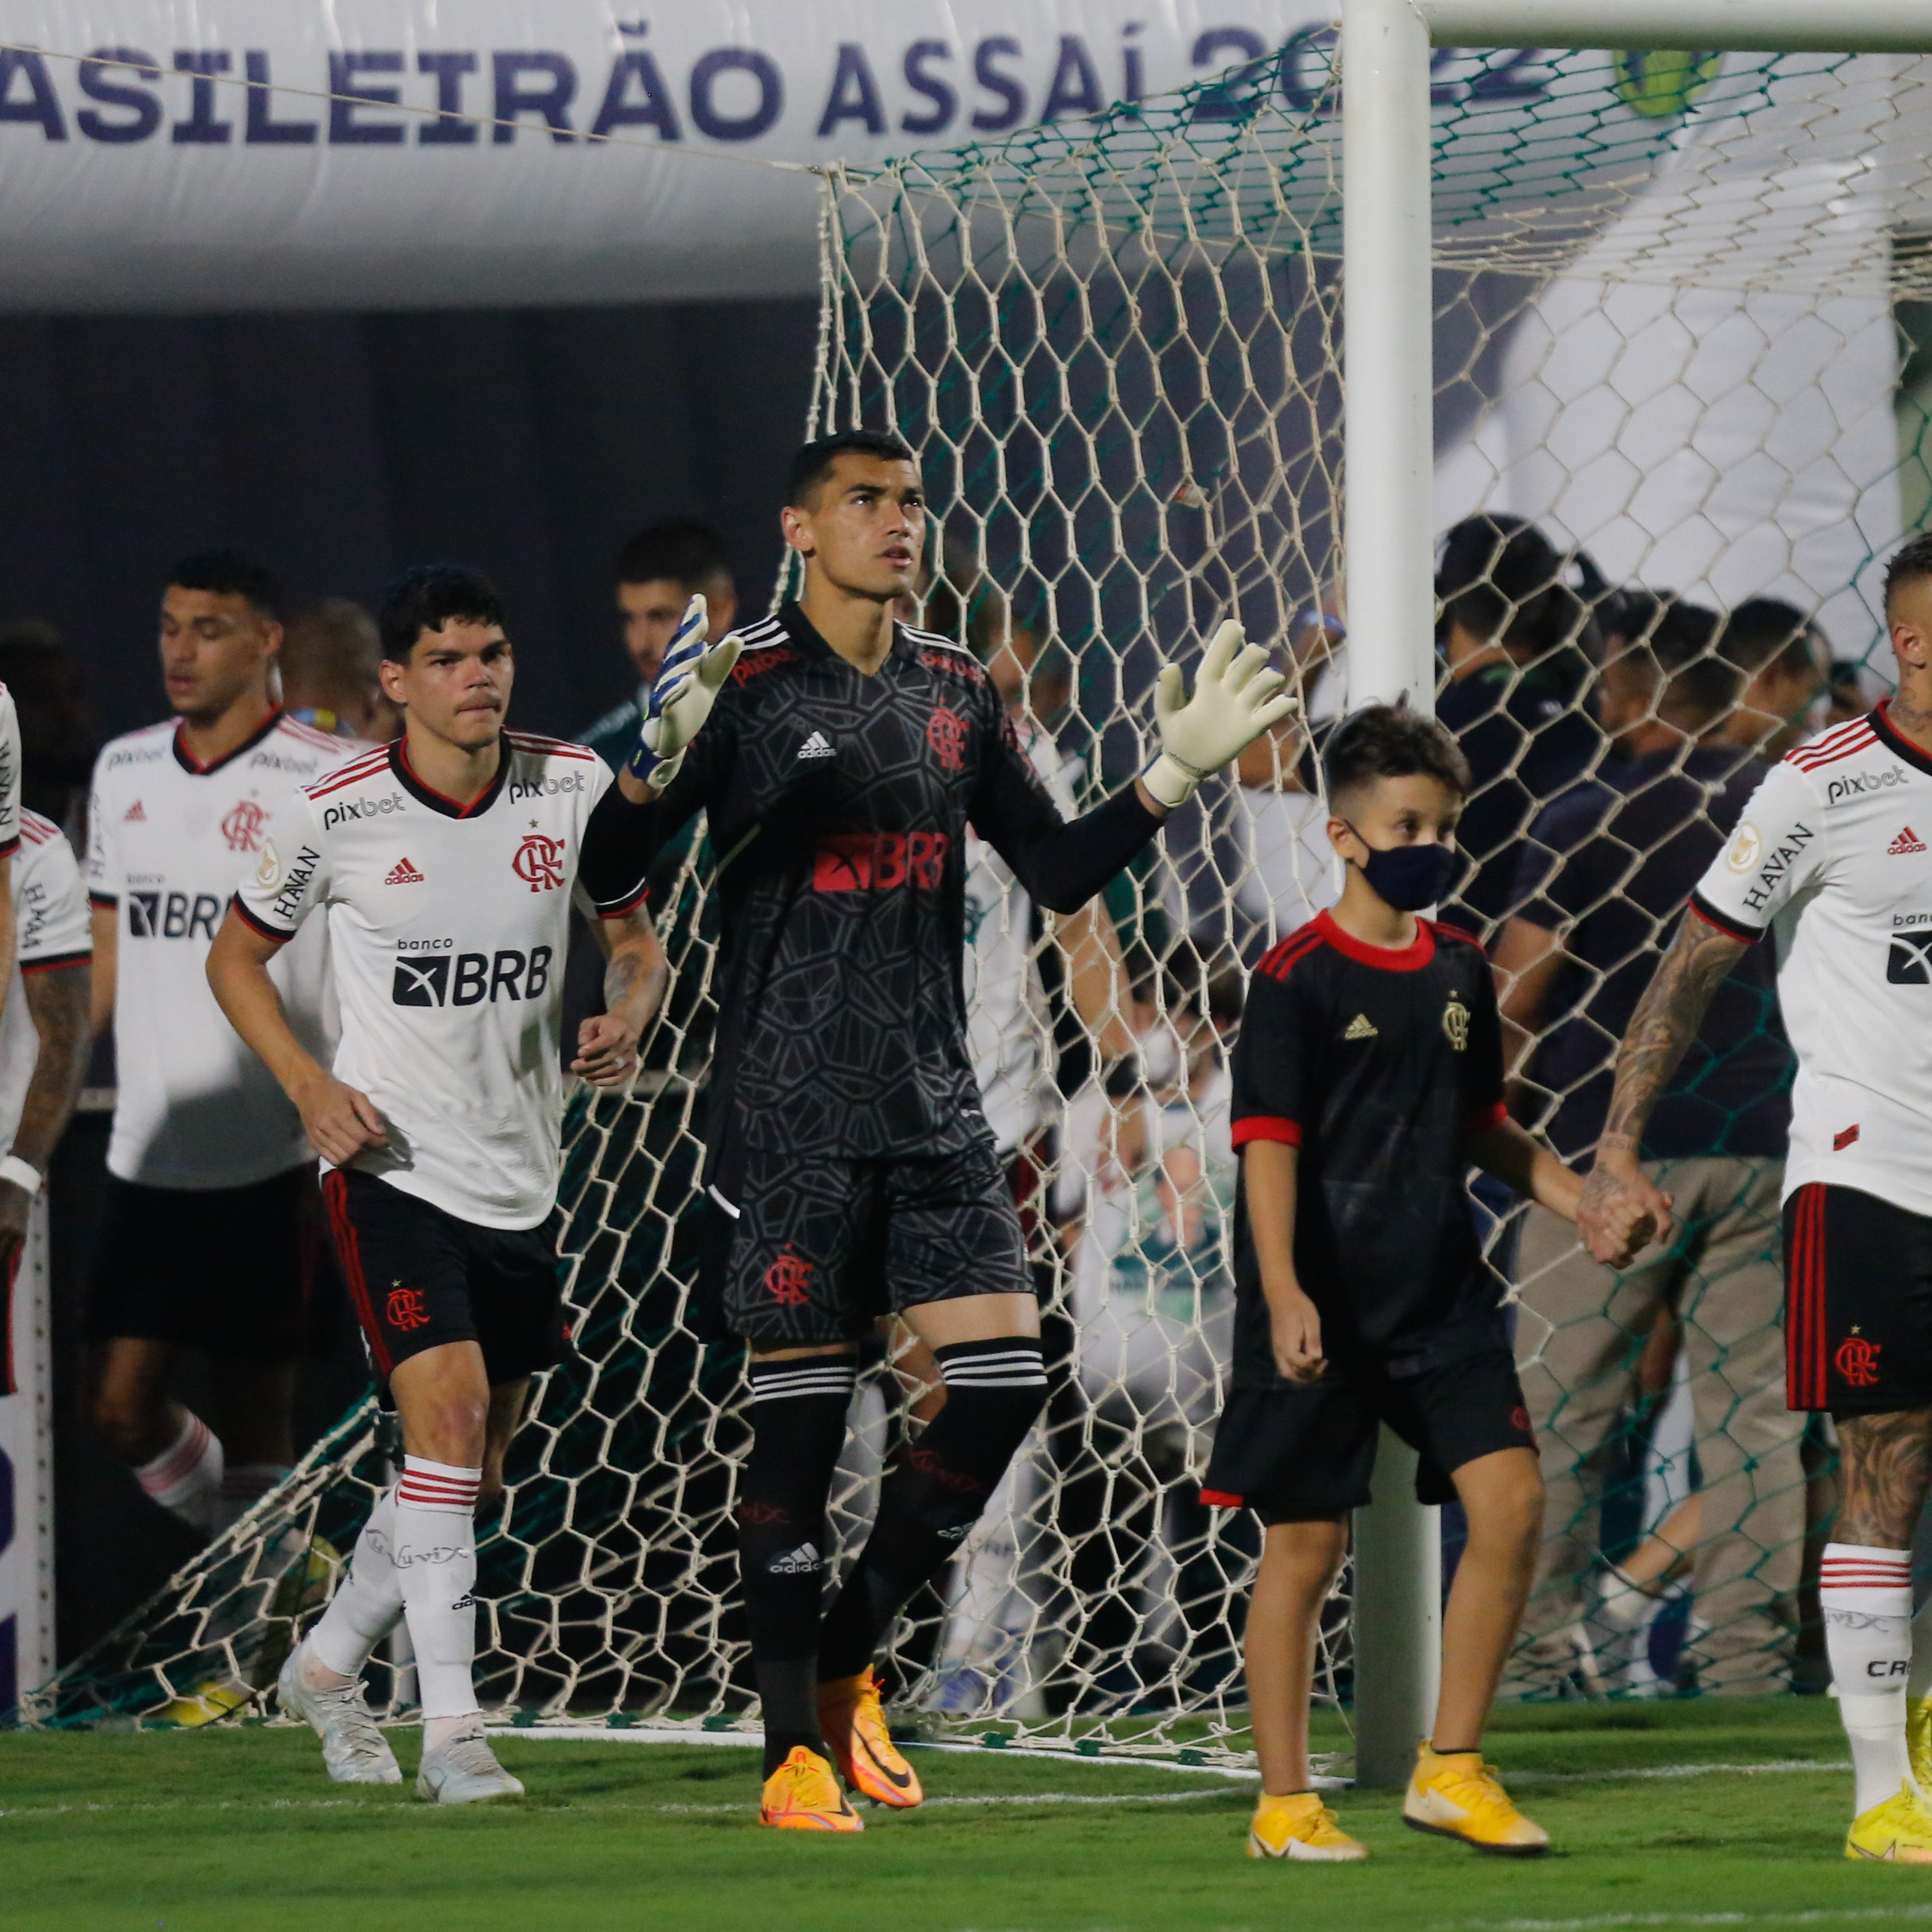 #GE Flamengo 266 - Empate frustrante e duelos decisivos com tricolores